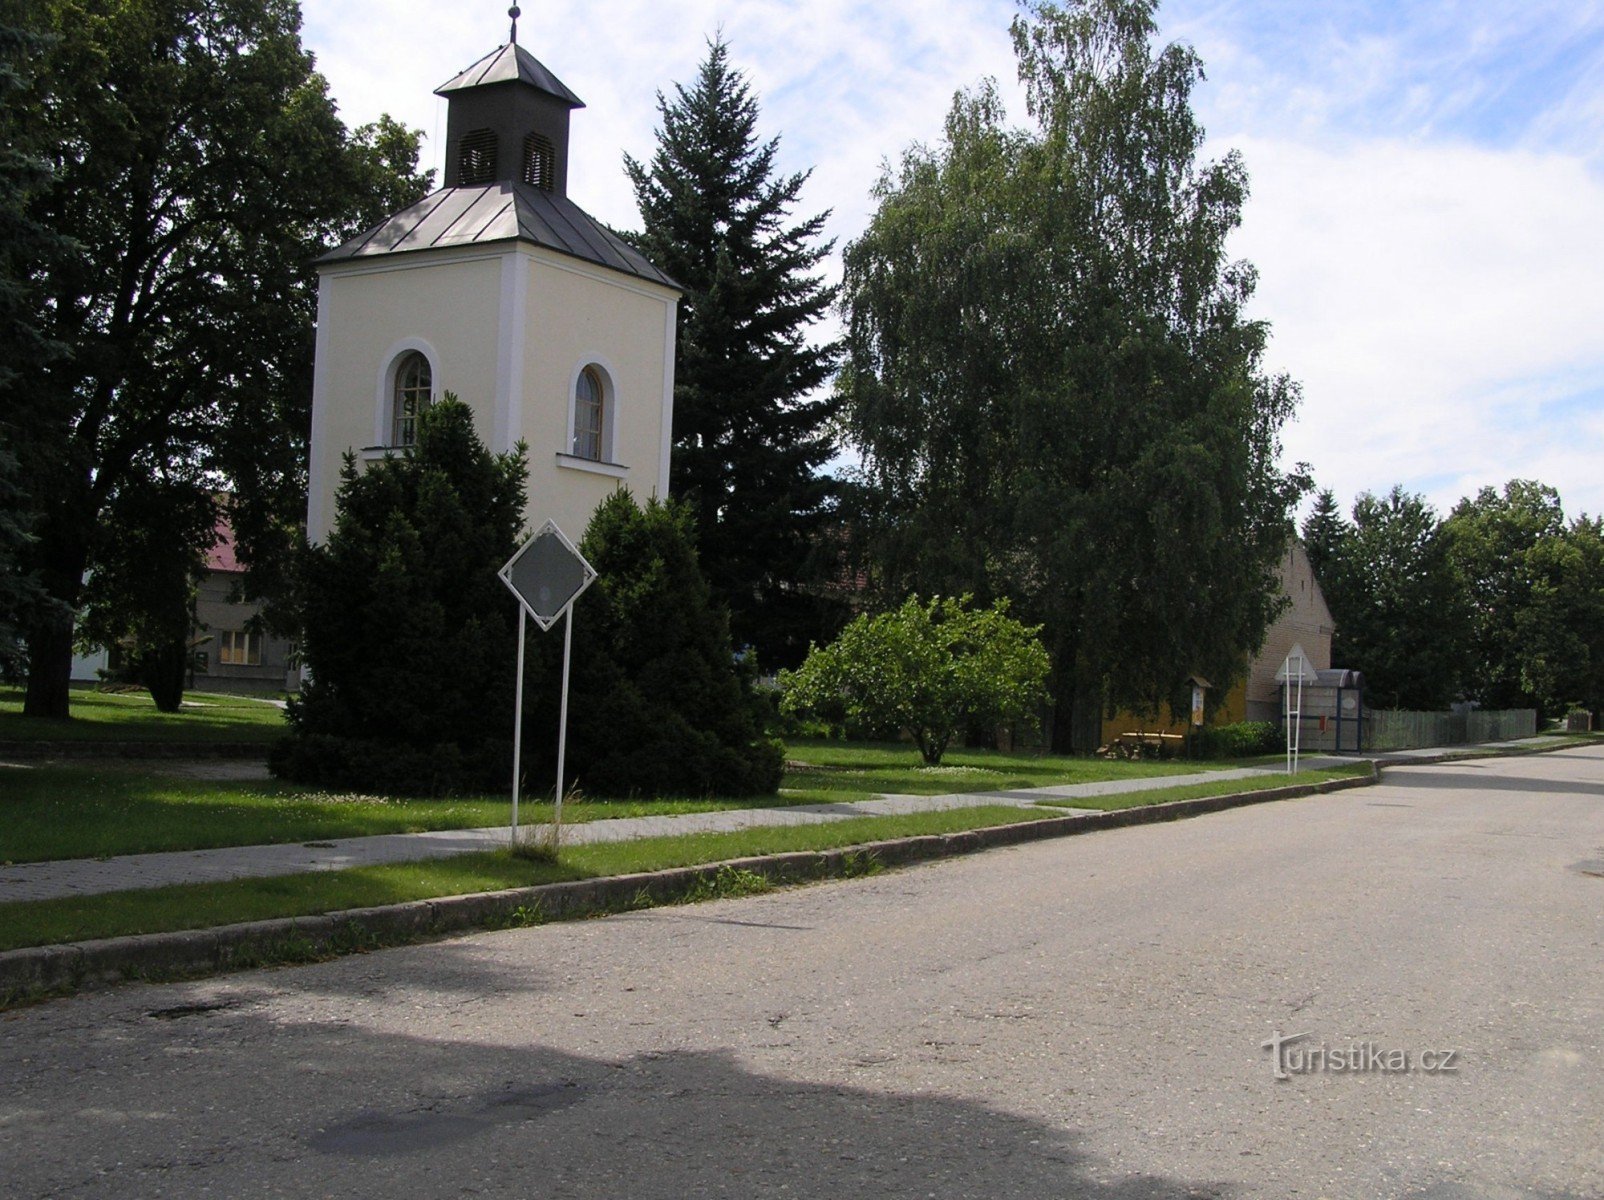 kapel i landsbyen (juli 2007)